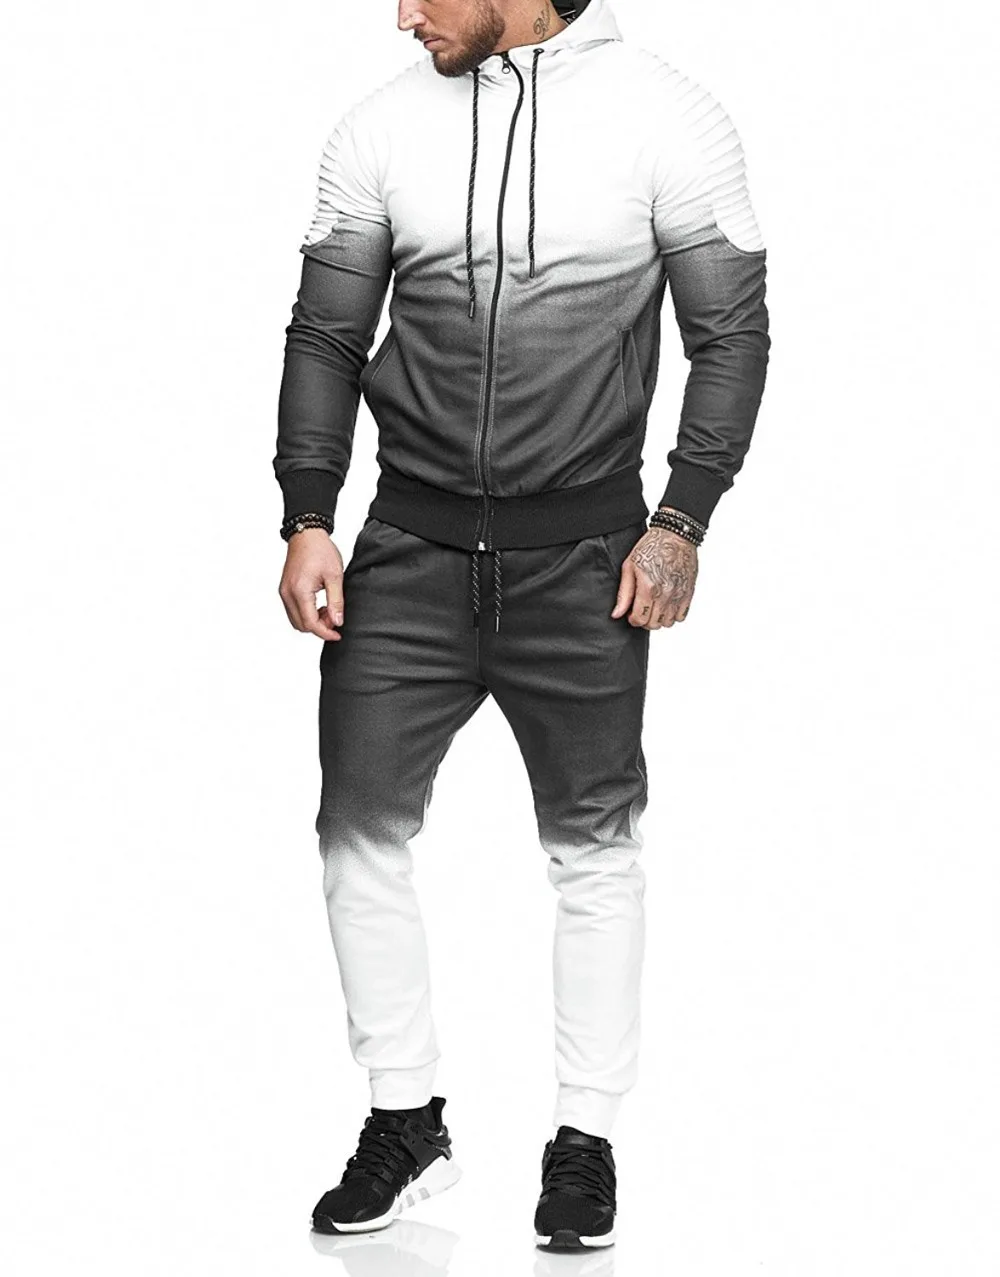 Litthing спортивный костюм на молнии, мужской комплект, спортивный костюм из 2 предметов, Мужская одежда, толстовки с капюшоном и принтом, куртка и штаны, спортивный костюм для мужчин